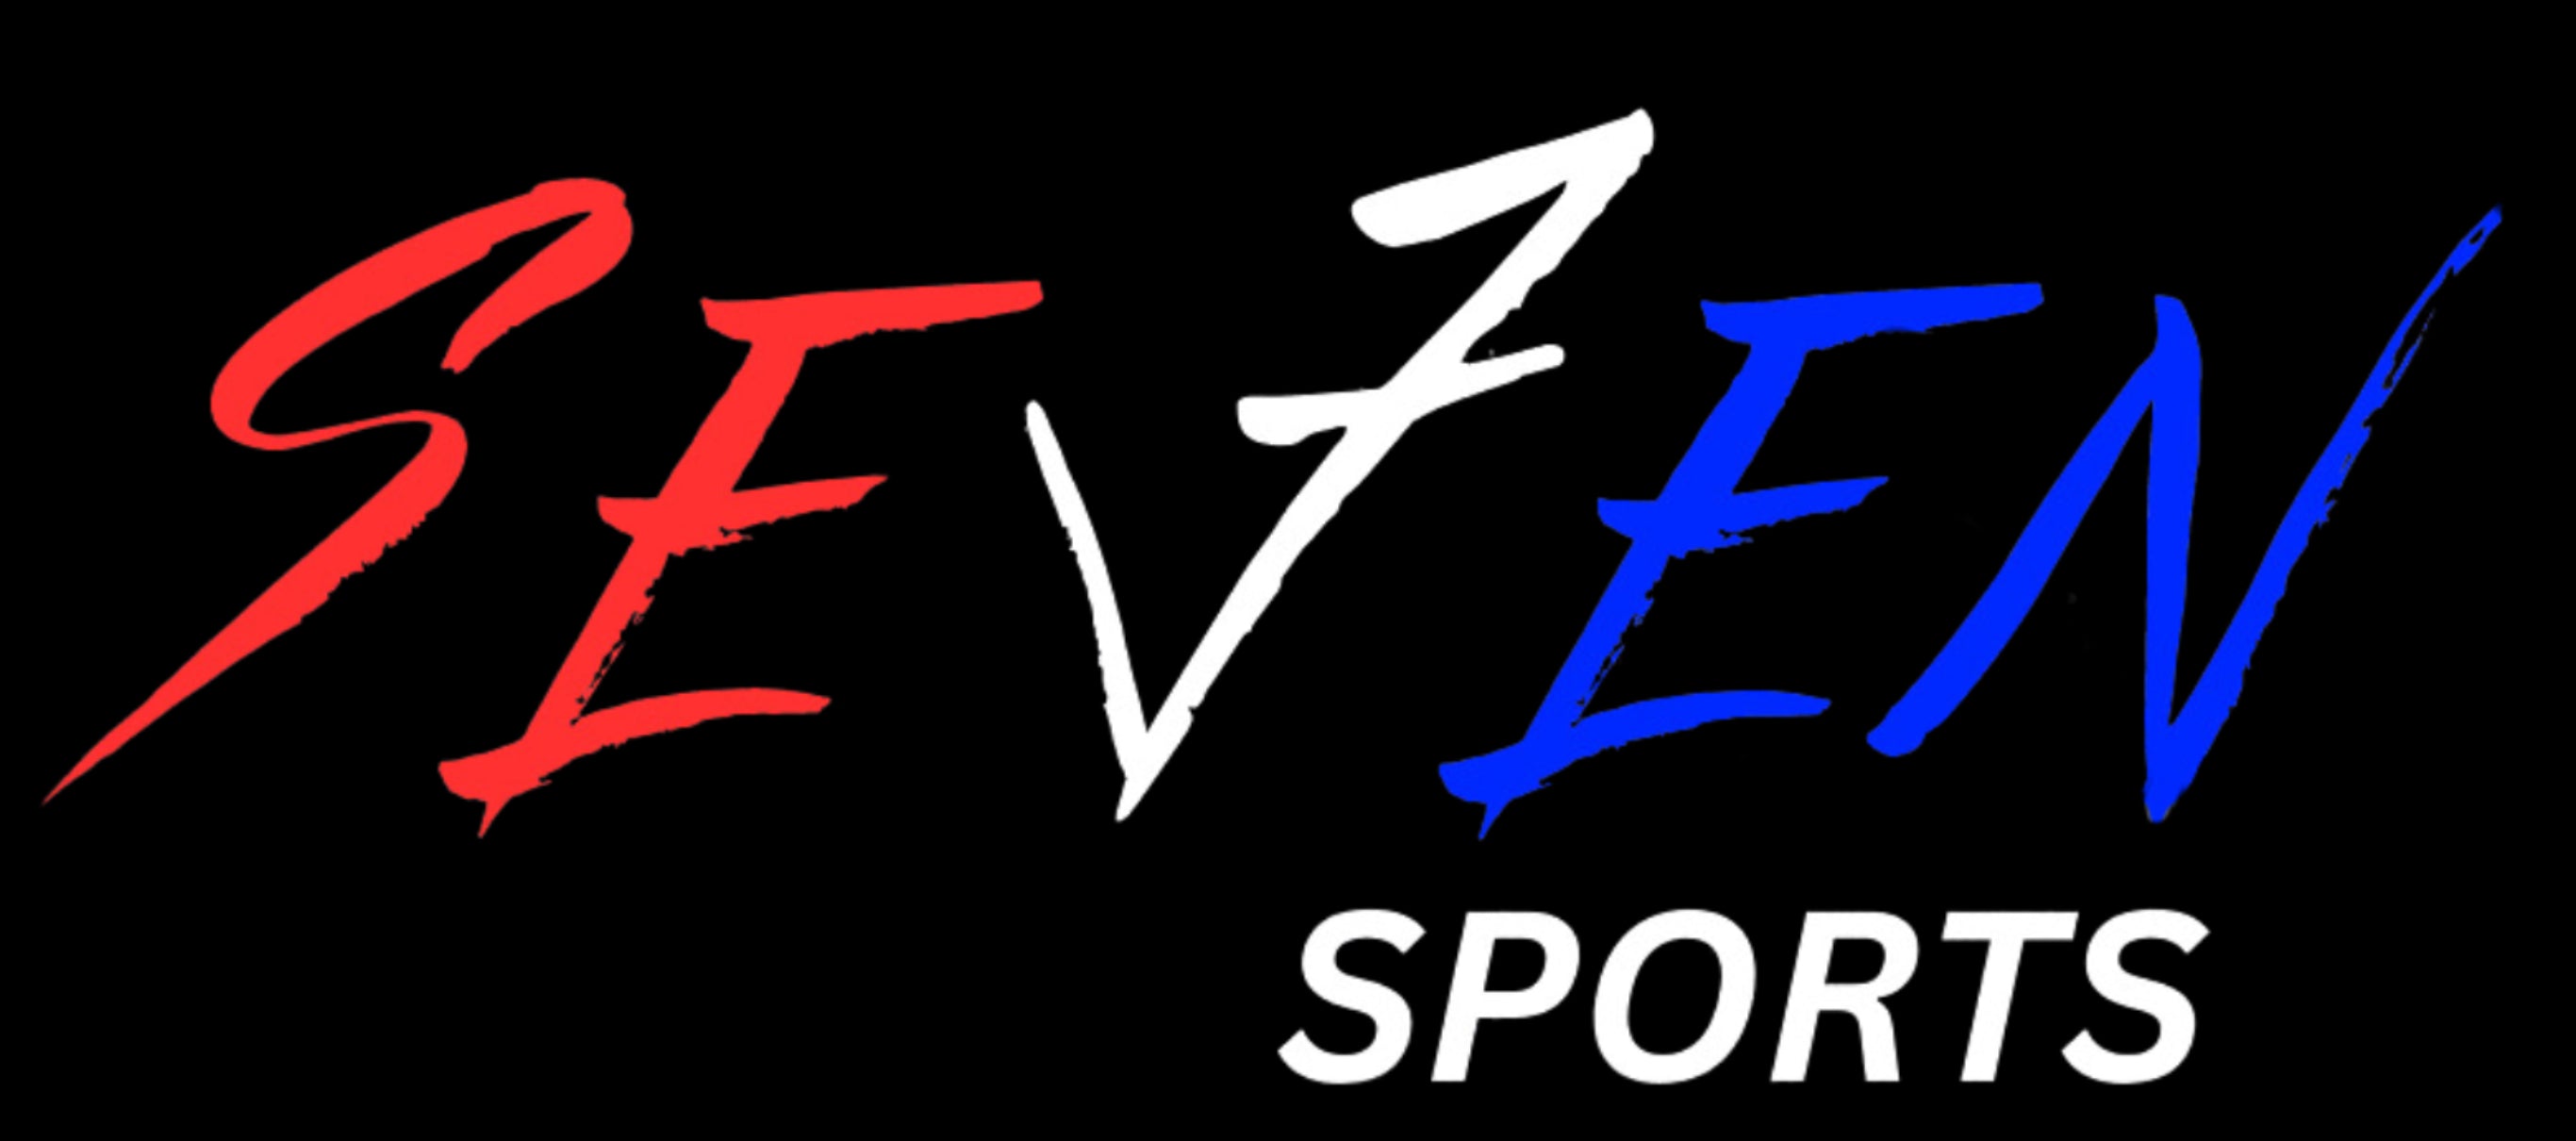 Se7en Sports